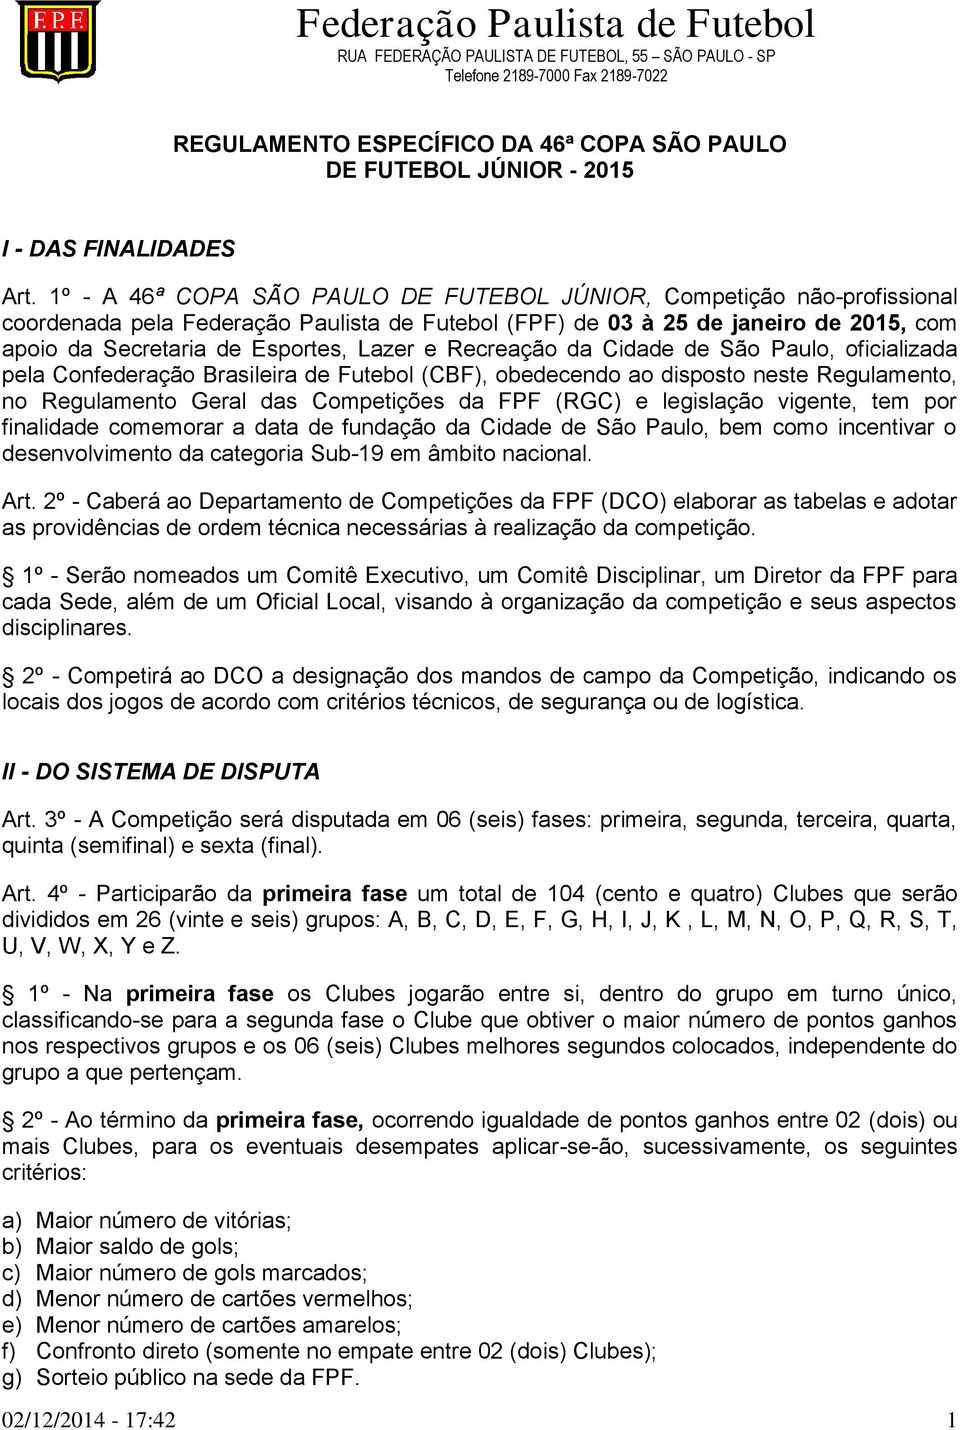 1º - A 46ª COPA SÃO PAULO DE FUTEBOL JÚNIOR, Competição não-profissional coordenada pela Federação Paulista de Futebol (FPF) de 03 à 25 de janeiro de 2015, com apoio da Secretaria de Esportes, Lazer